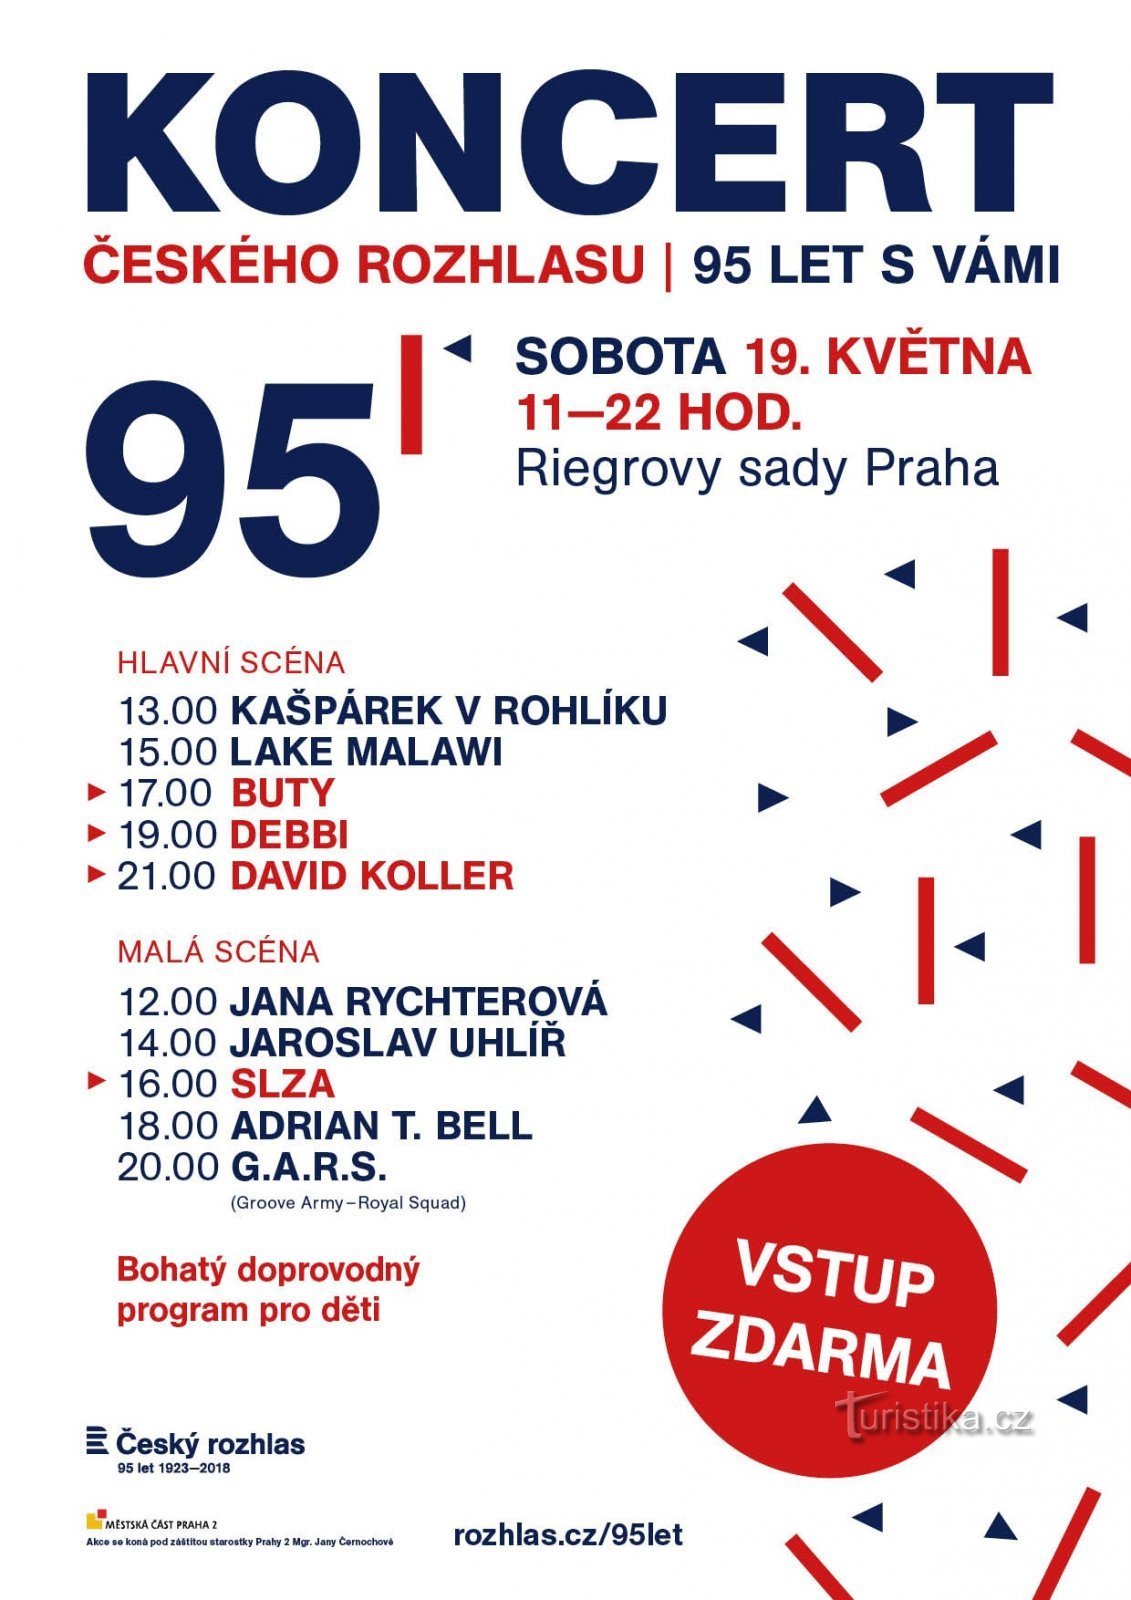 Českému rozhlasu bude 95 let, oslavy vyvrcholí koncertem v Riegrových sadech